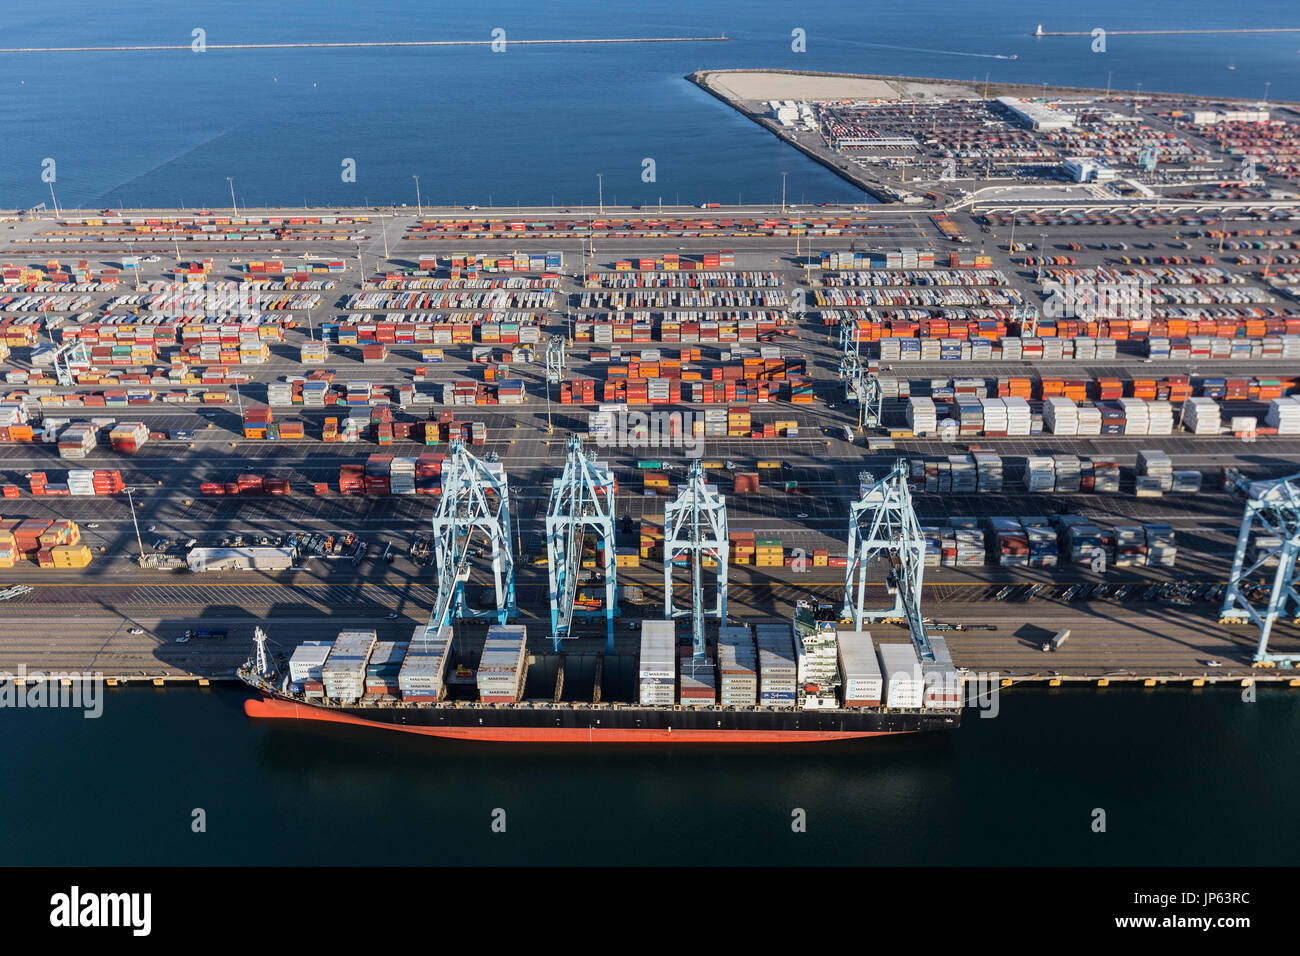 Los Angeles, Kalifornien, USA - 10. Juli 2017: Luftaufnahme des Luftfracht-Container Terminal Island und Schiff in Südkalifornien. Stockfoto